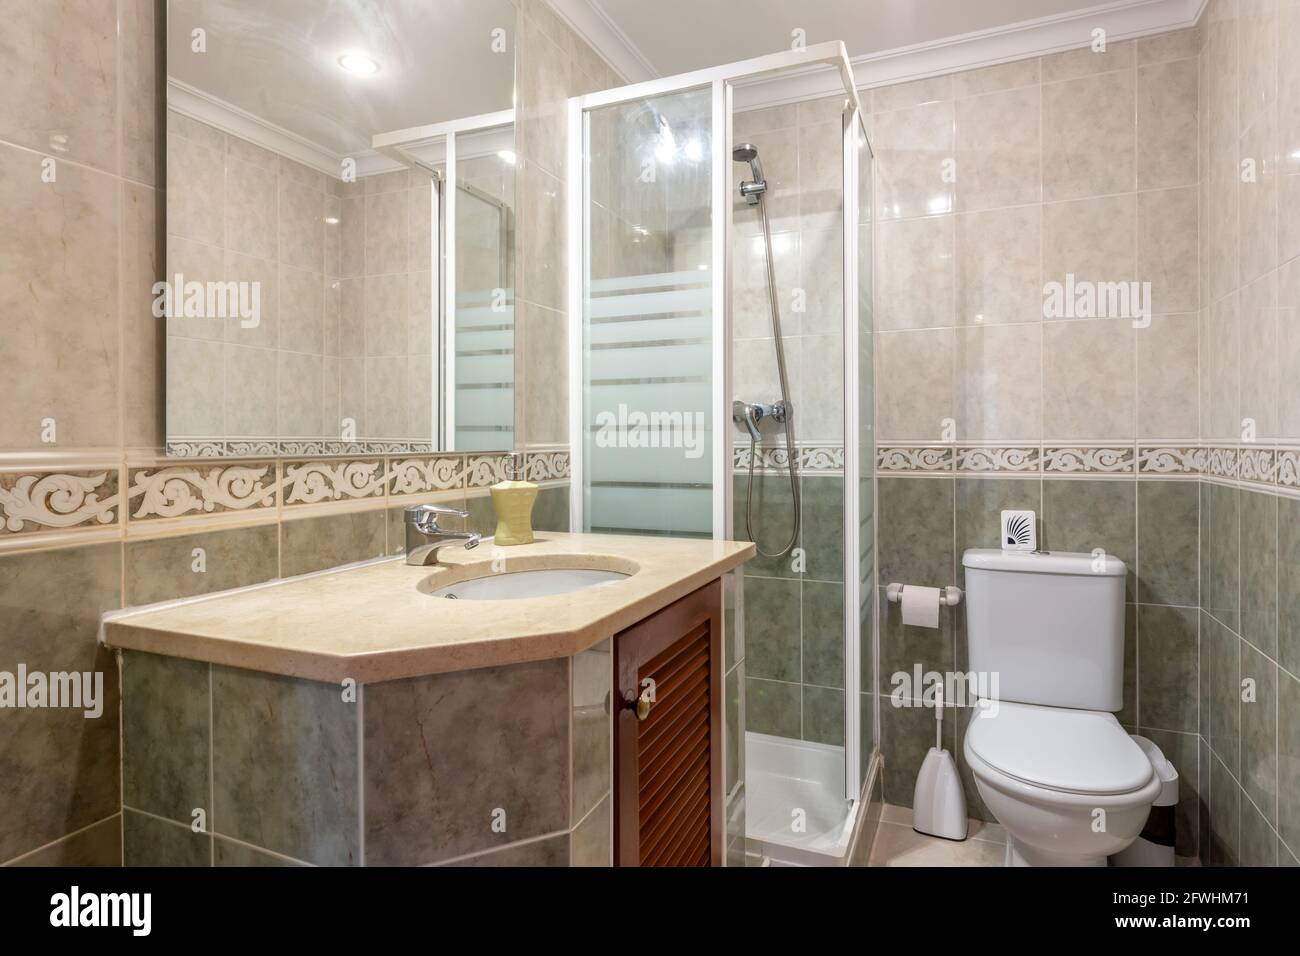 Baño sencillo de temática beige decorado con algunas toallas limpias. Hay  un lavabo moderno al lado de una ducha, iluminado por una ventana hacia el  exterior Fotografía de stock - Alamy